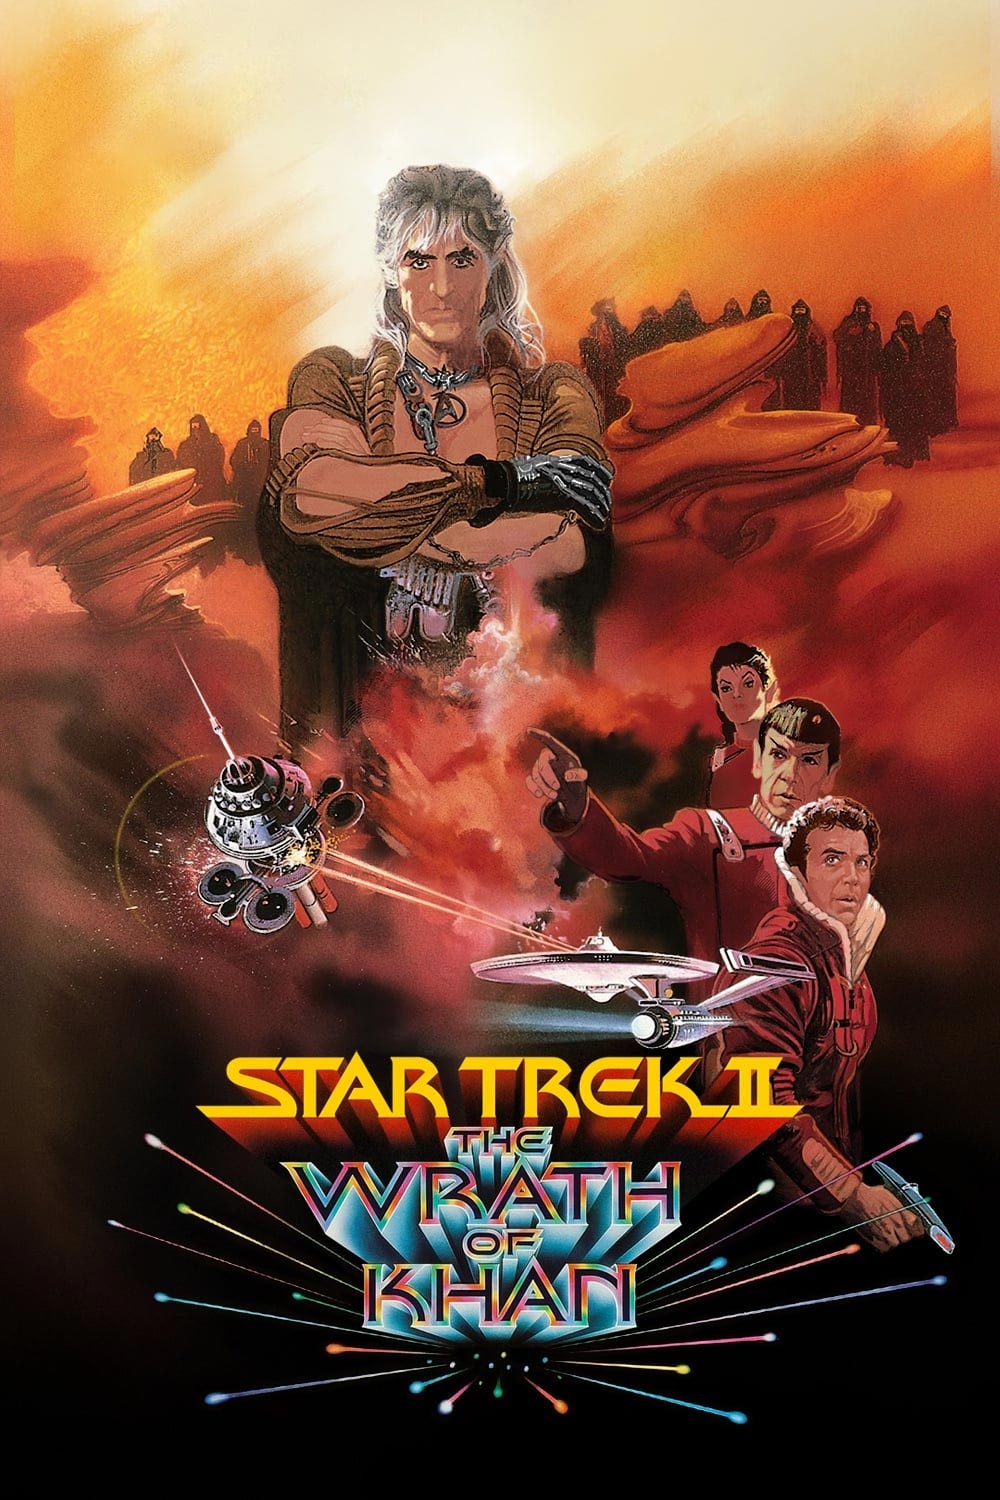 Star Trek II: The Wrath of Khan Poster